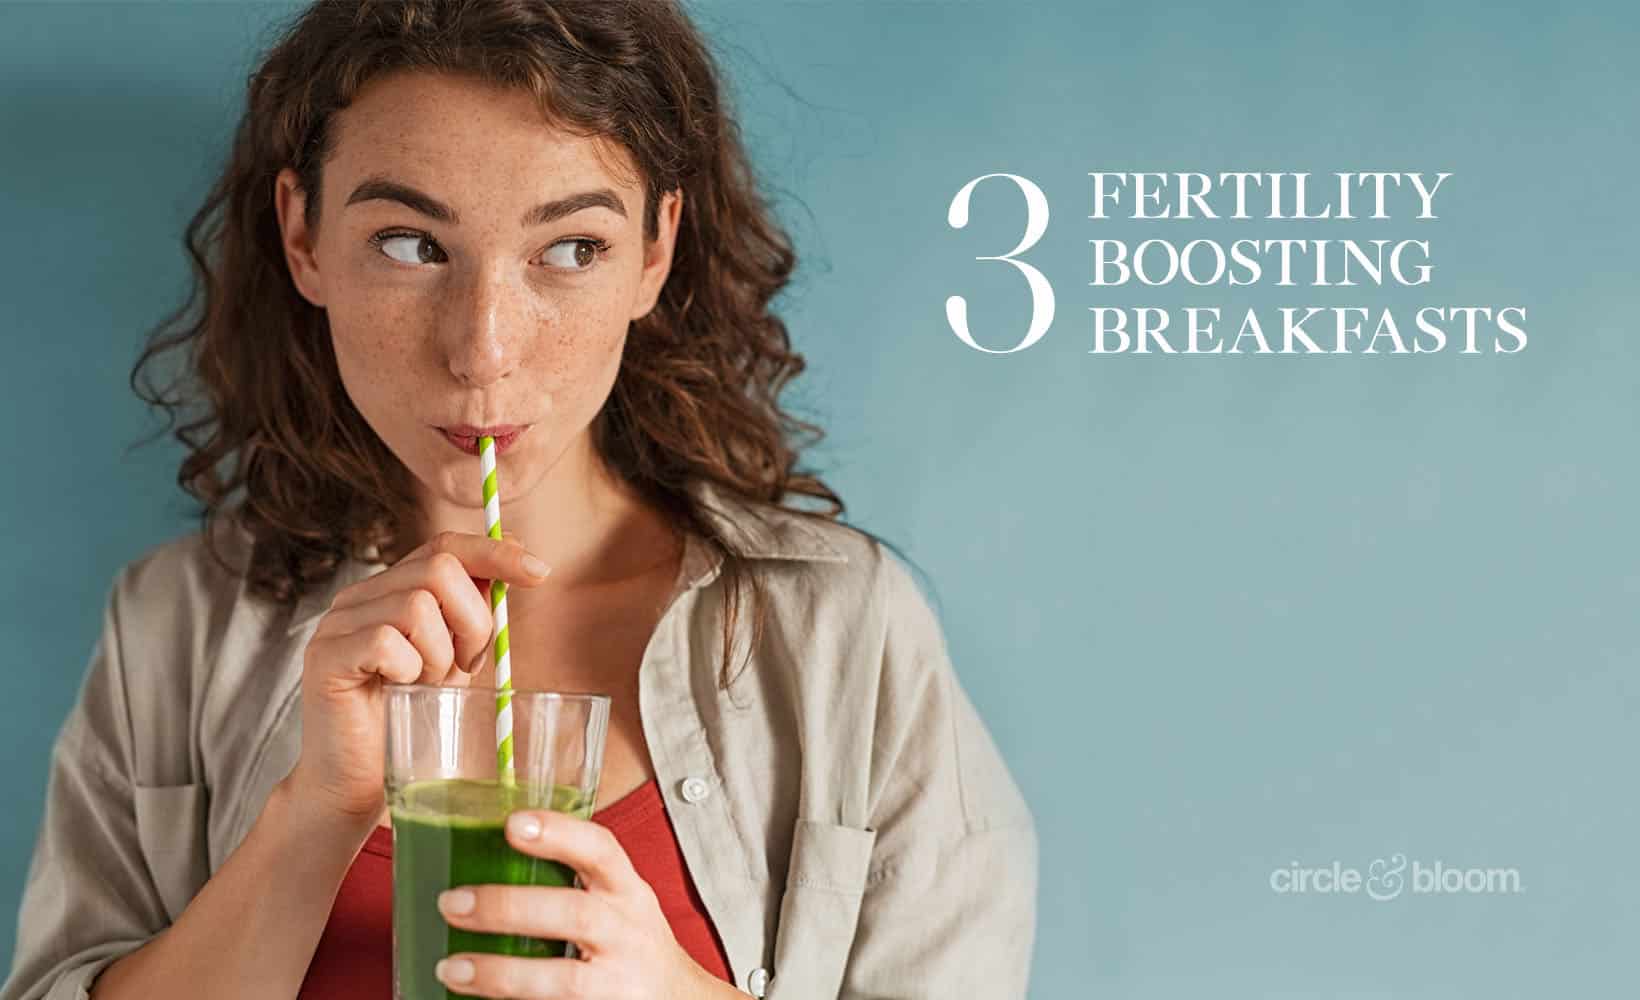 3 Fertility Boosting Breakfasts